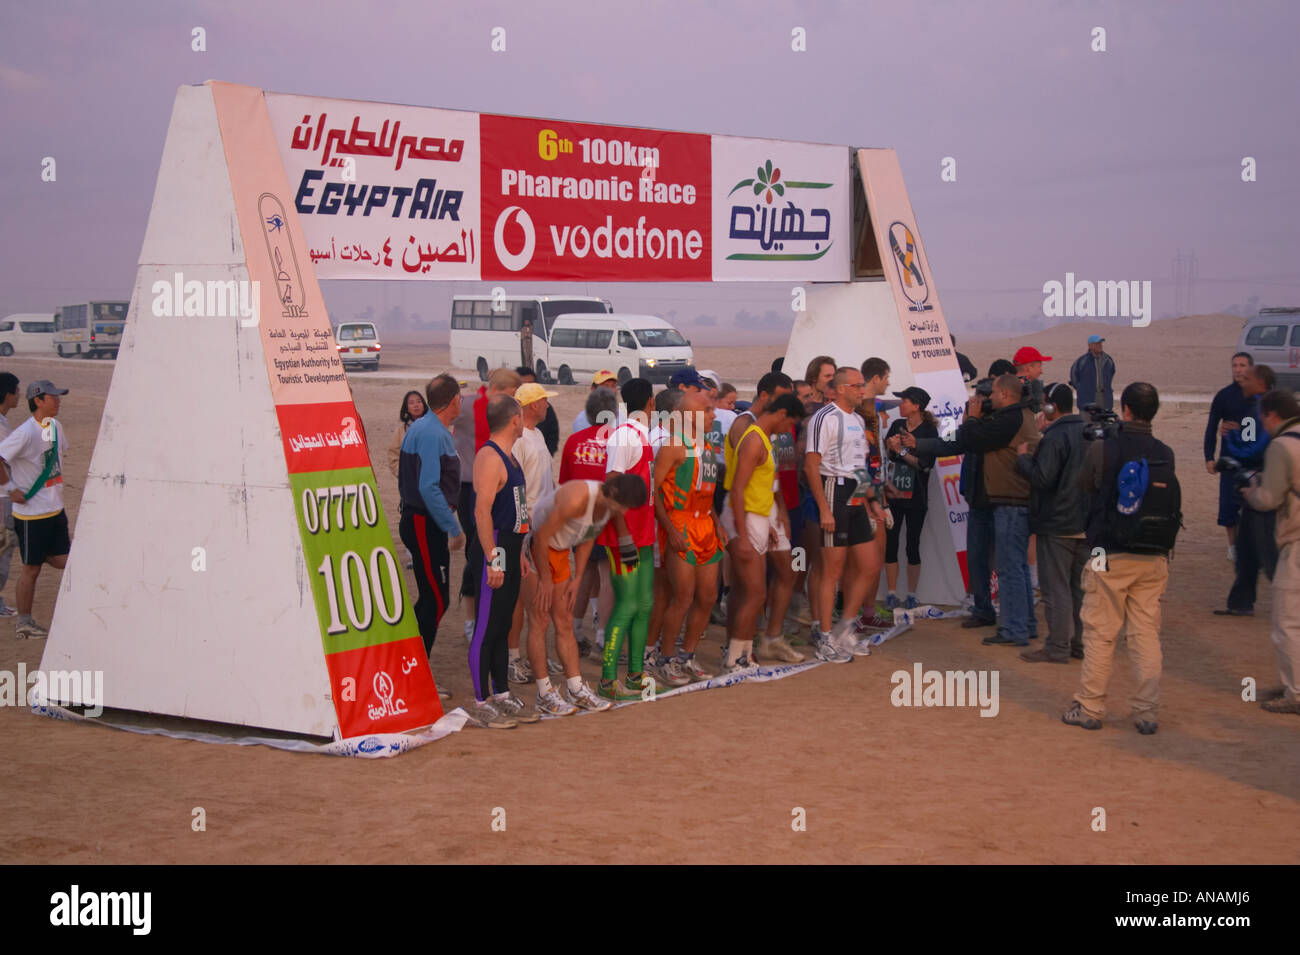 Concurrents sur le point de commencer la 6ème 100km course pharaonique au Caire, Egypte Banque D'Images